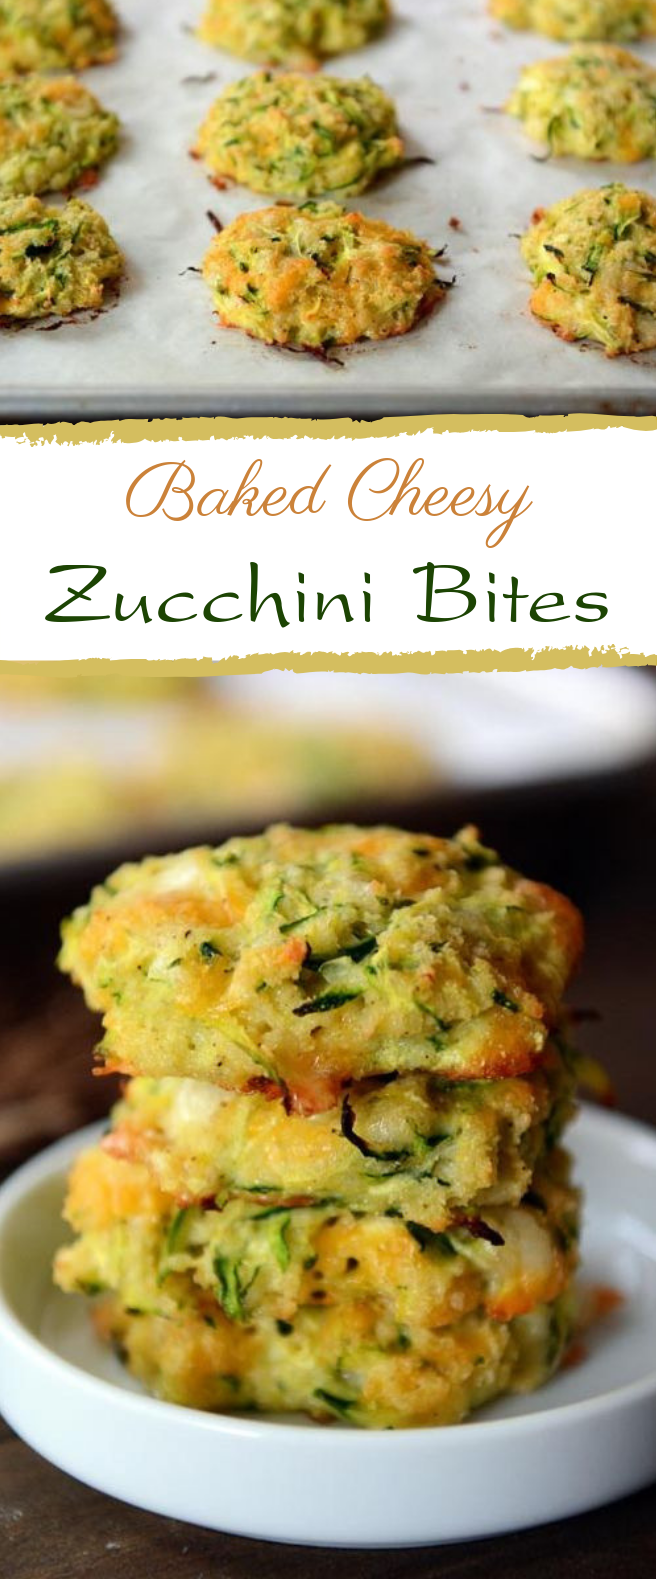 Baked Cheesy Zucchini Bites #snack #vegetarian